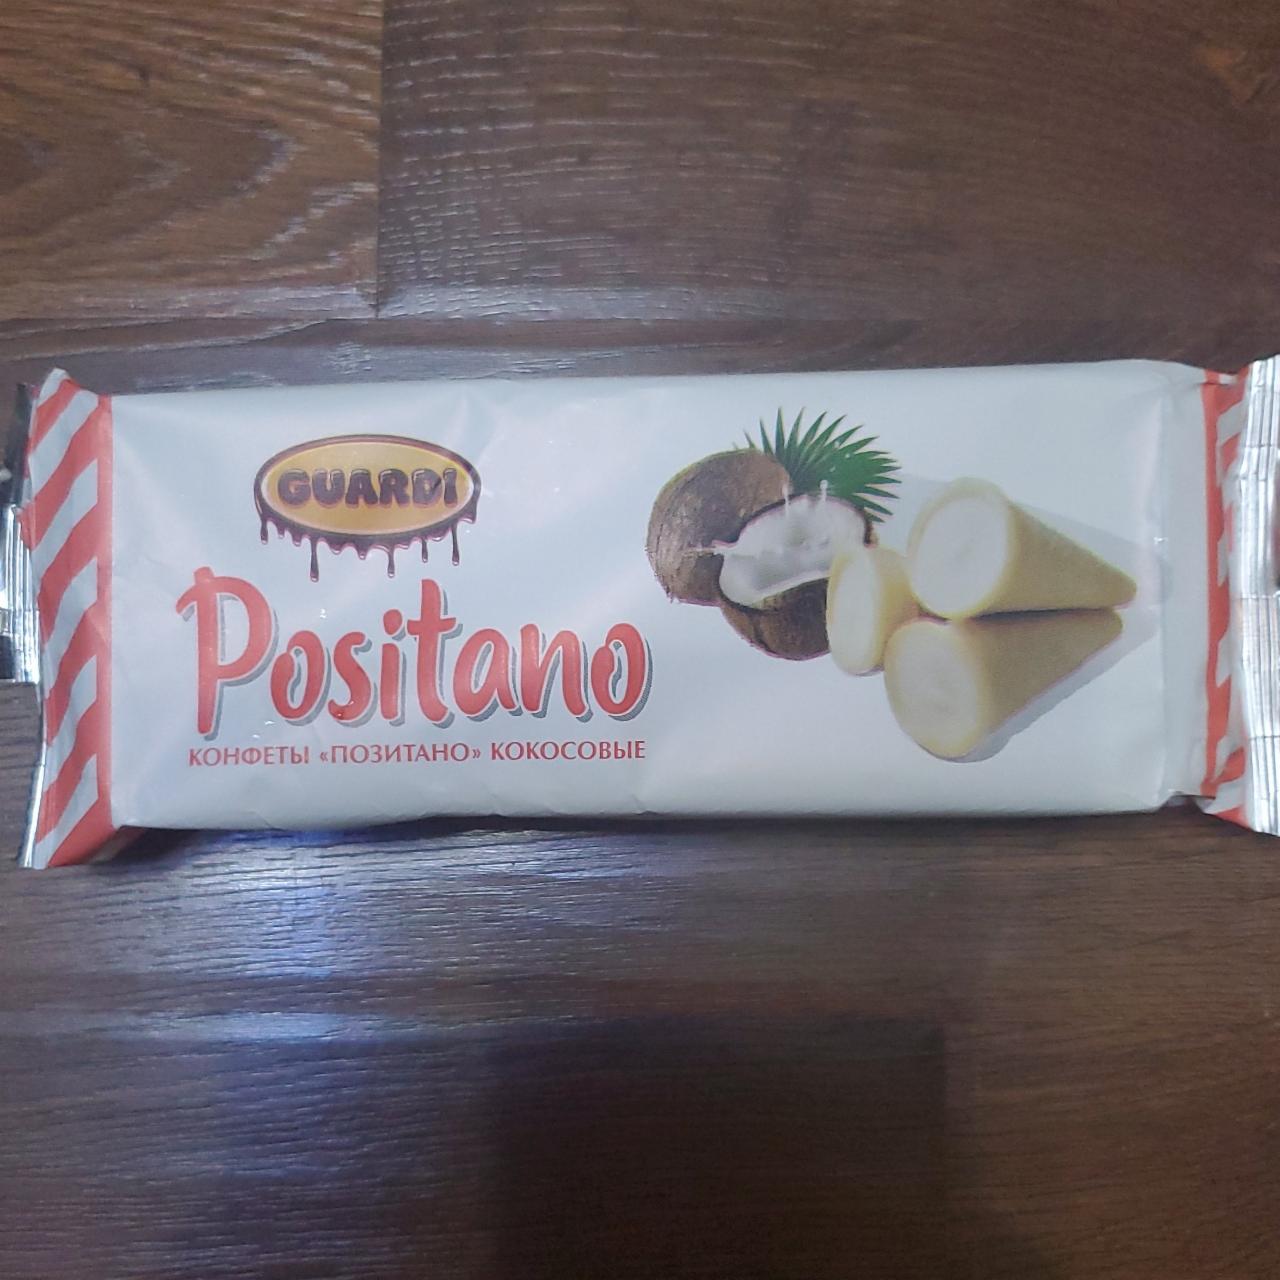 Фото - конфеты позитано кокосовые Guardi